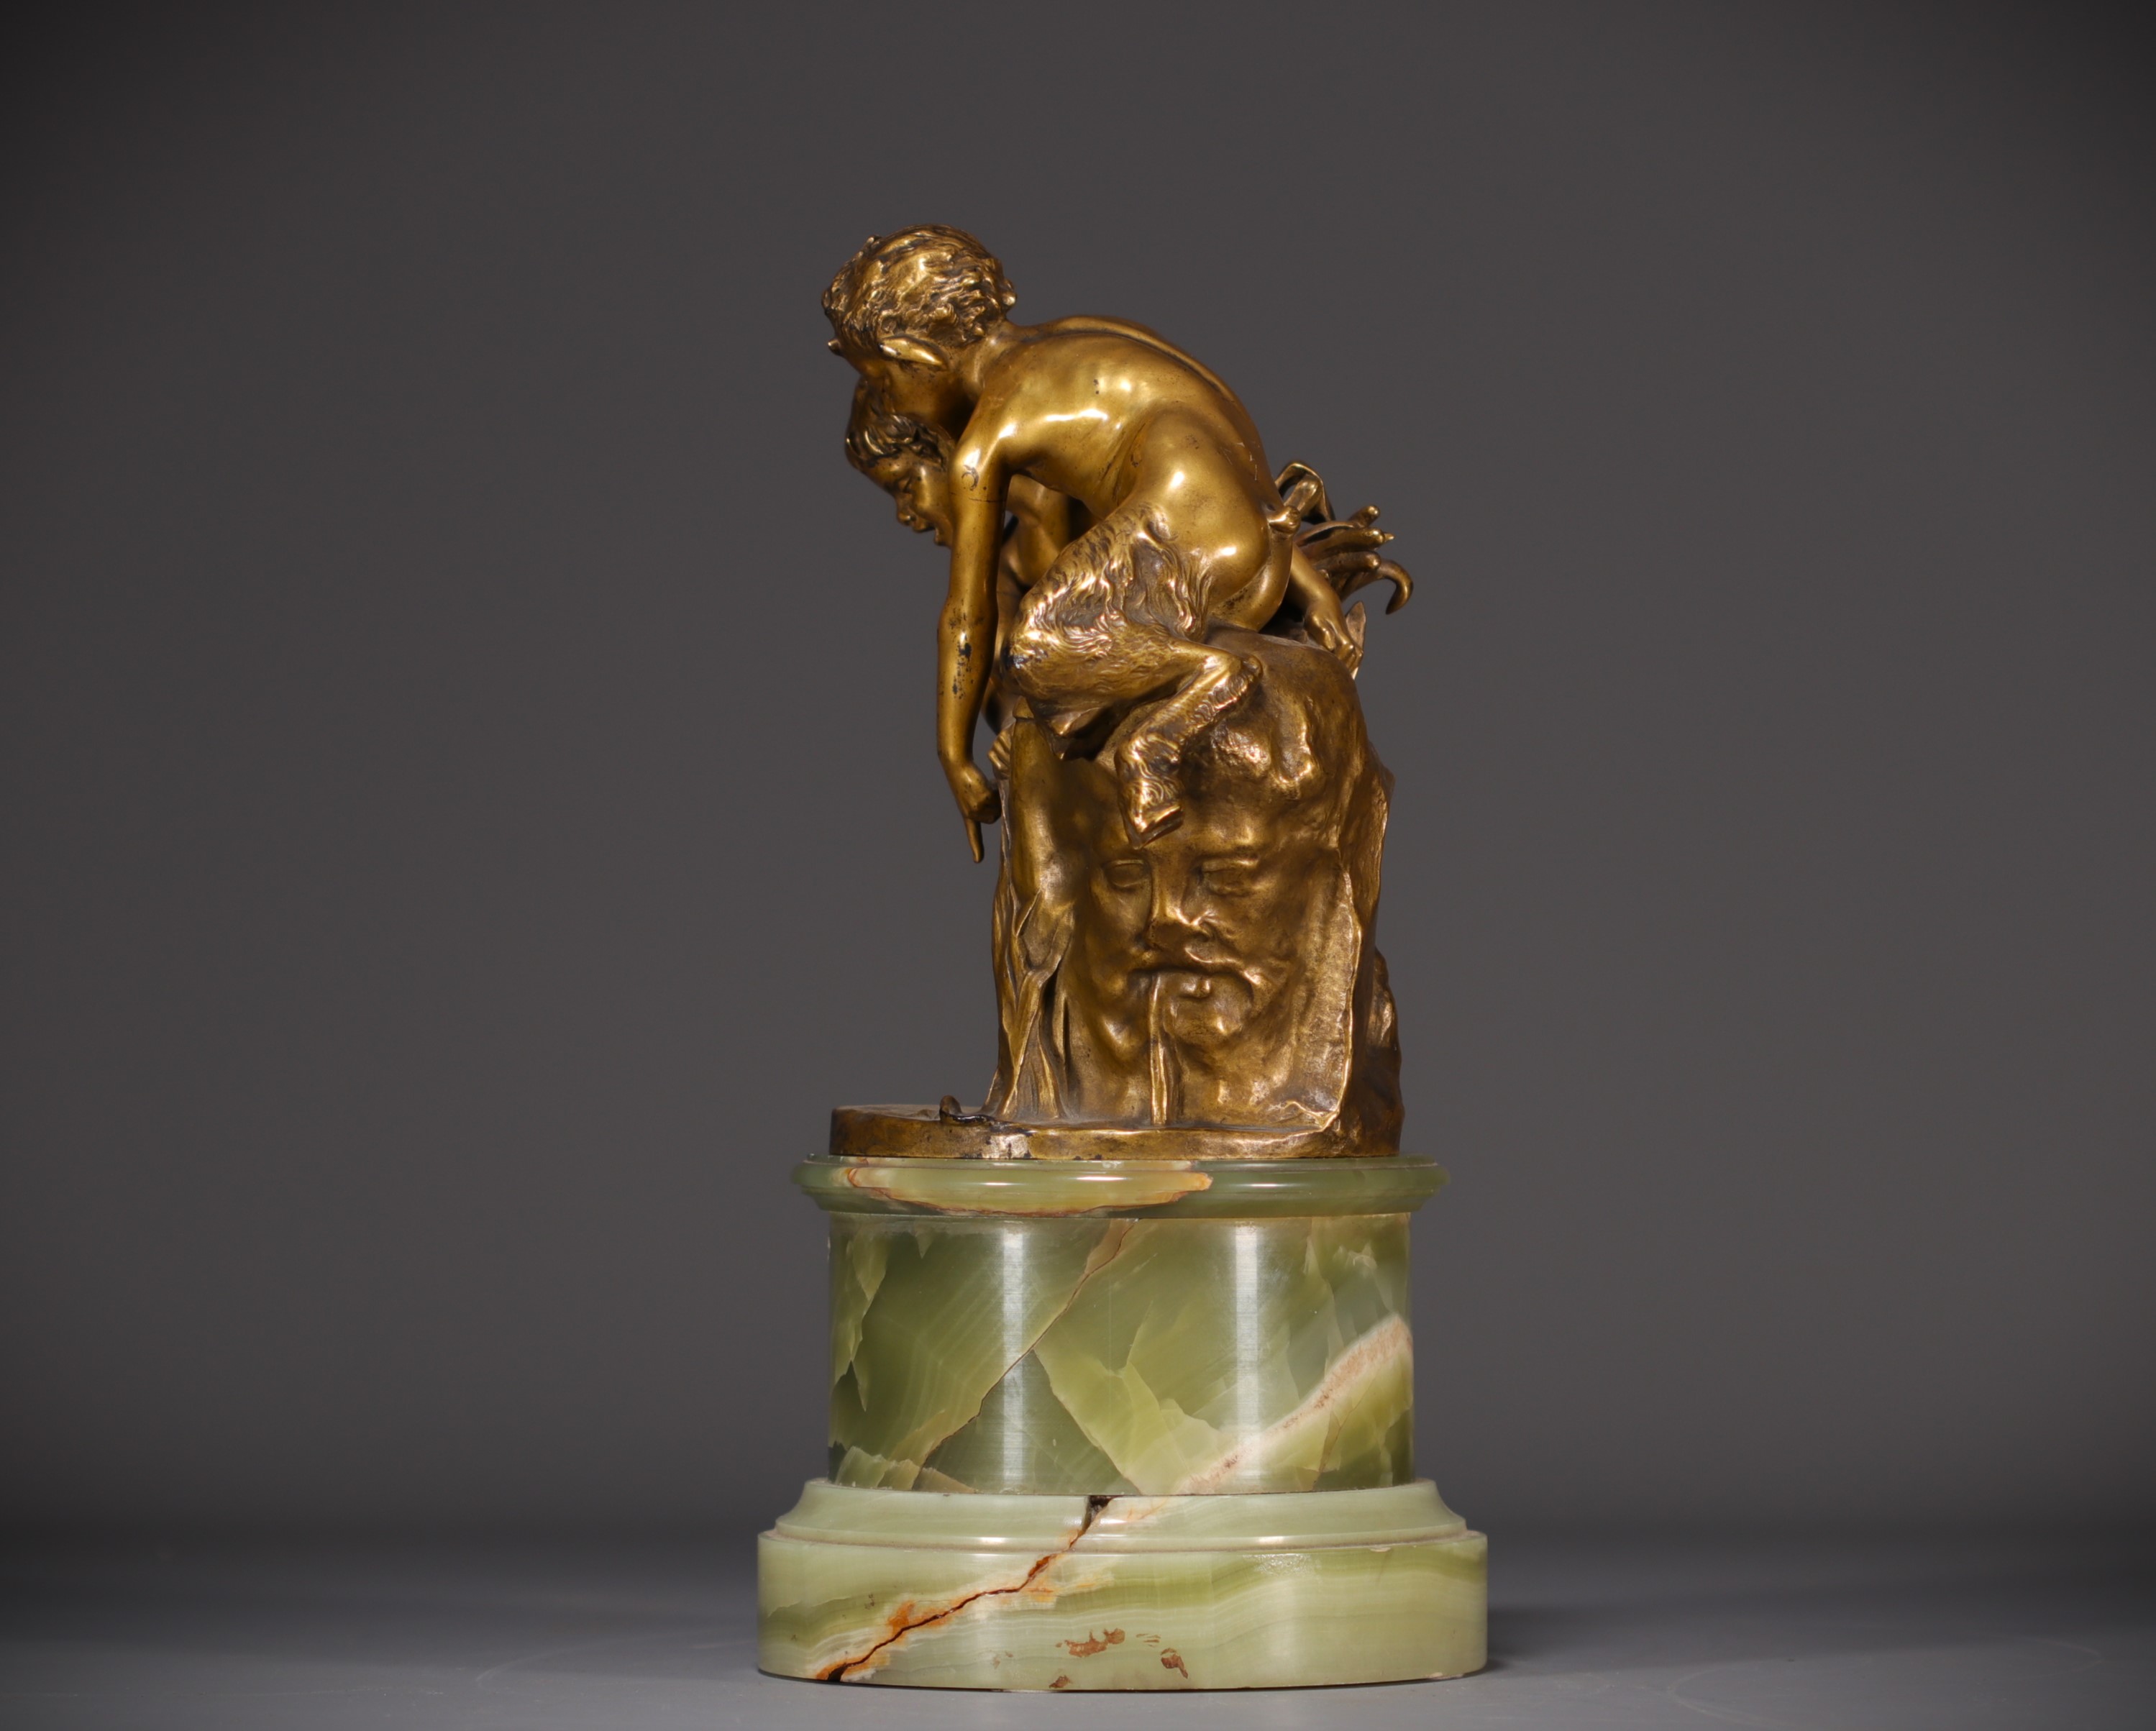 Raoul LARCHE (1860-1912) "Jeunes Faunes" Gilt bronze on marble base, signed. - Image 4 of 8